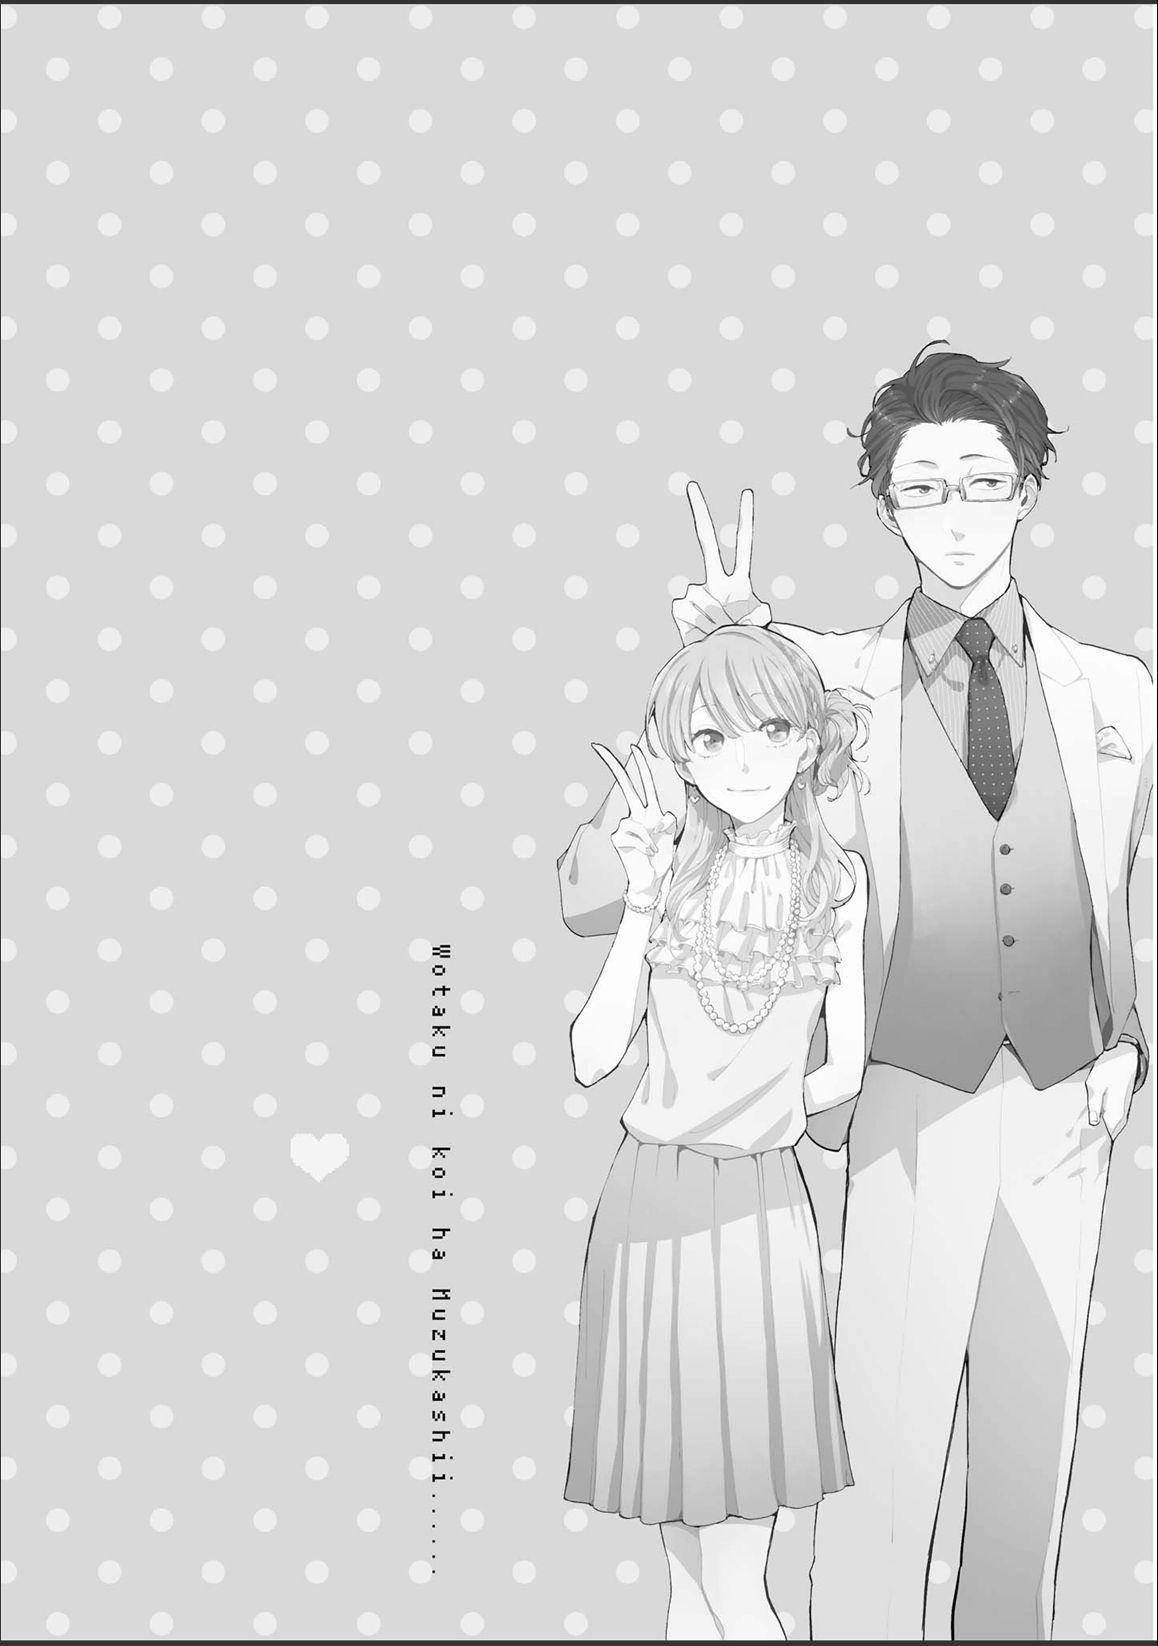 Anime Wotaku ni Koi wa Muzukashii 4k Ultra HD Wallpaper